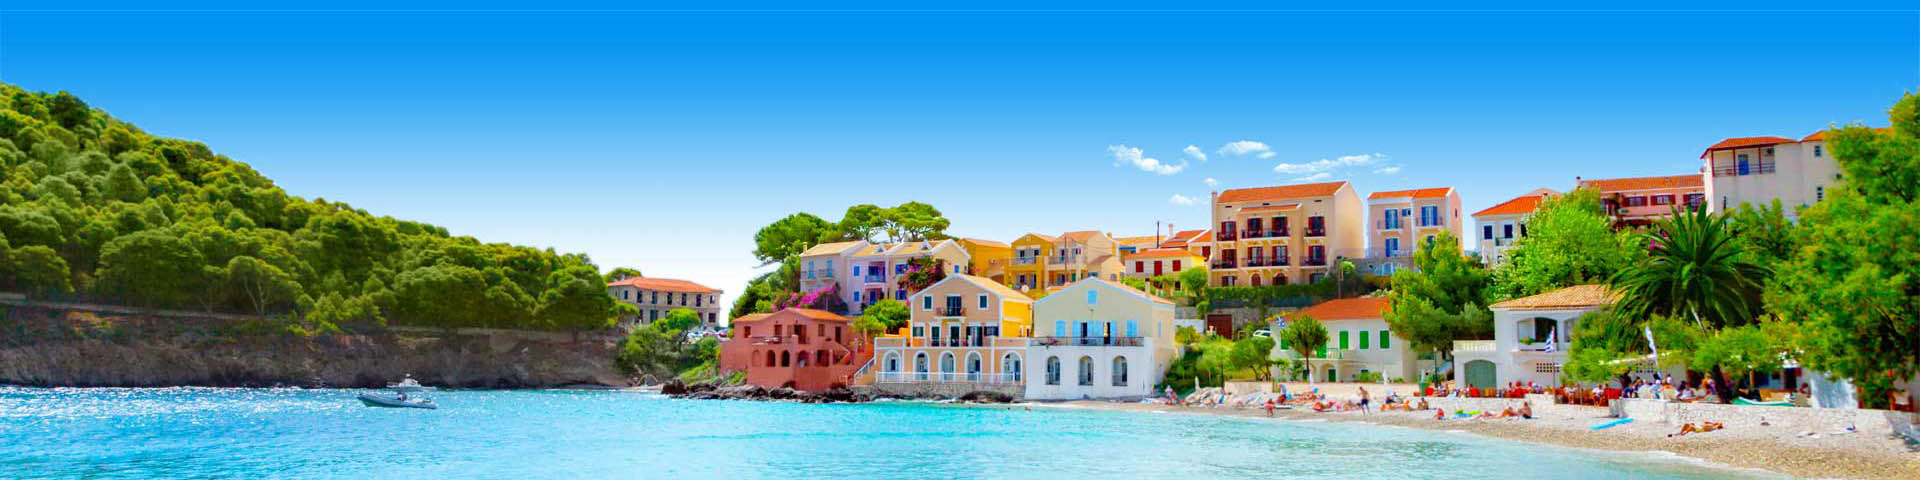 Traditionele, gekleurde huisjes aan de kust van Corfu in Griekenland